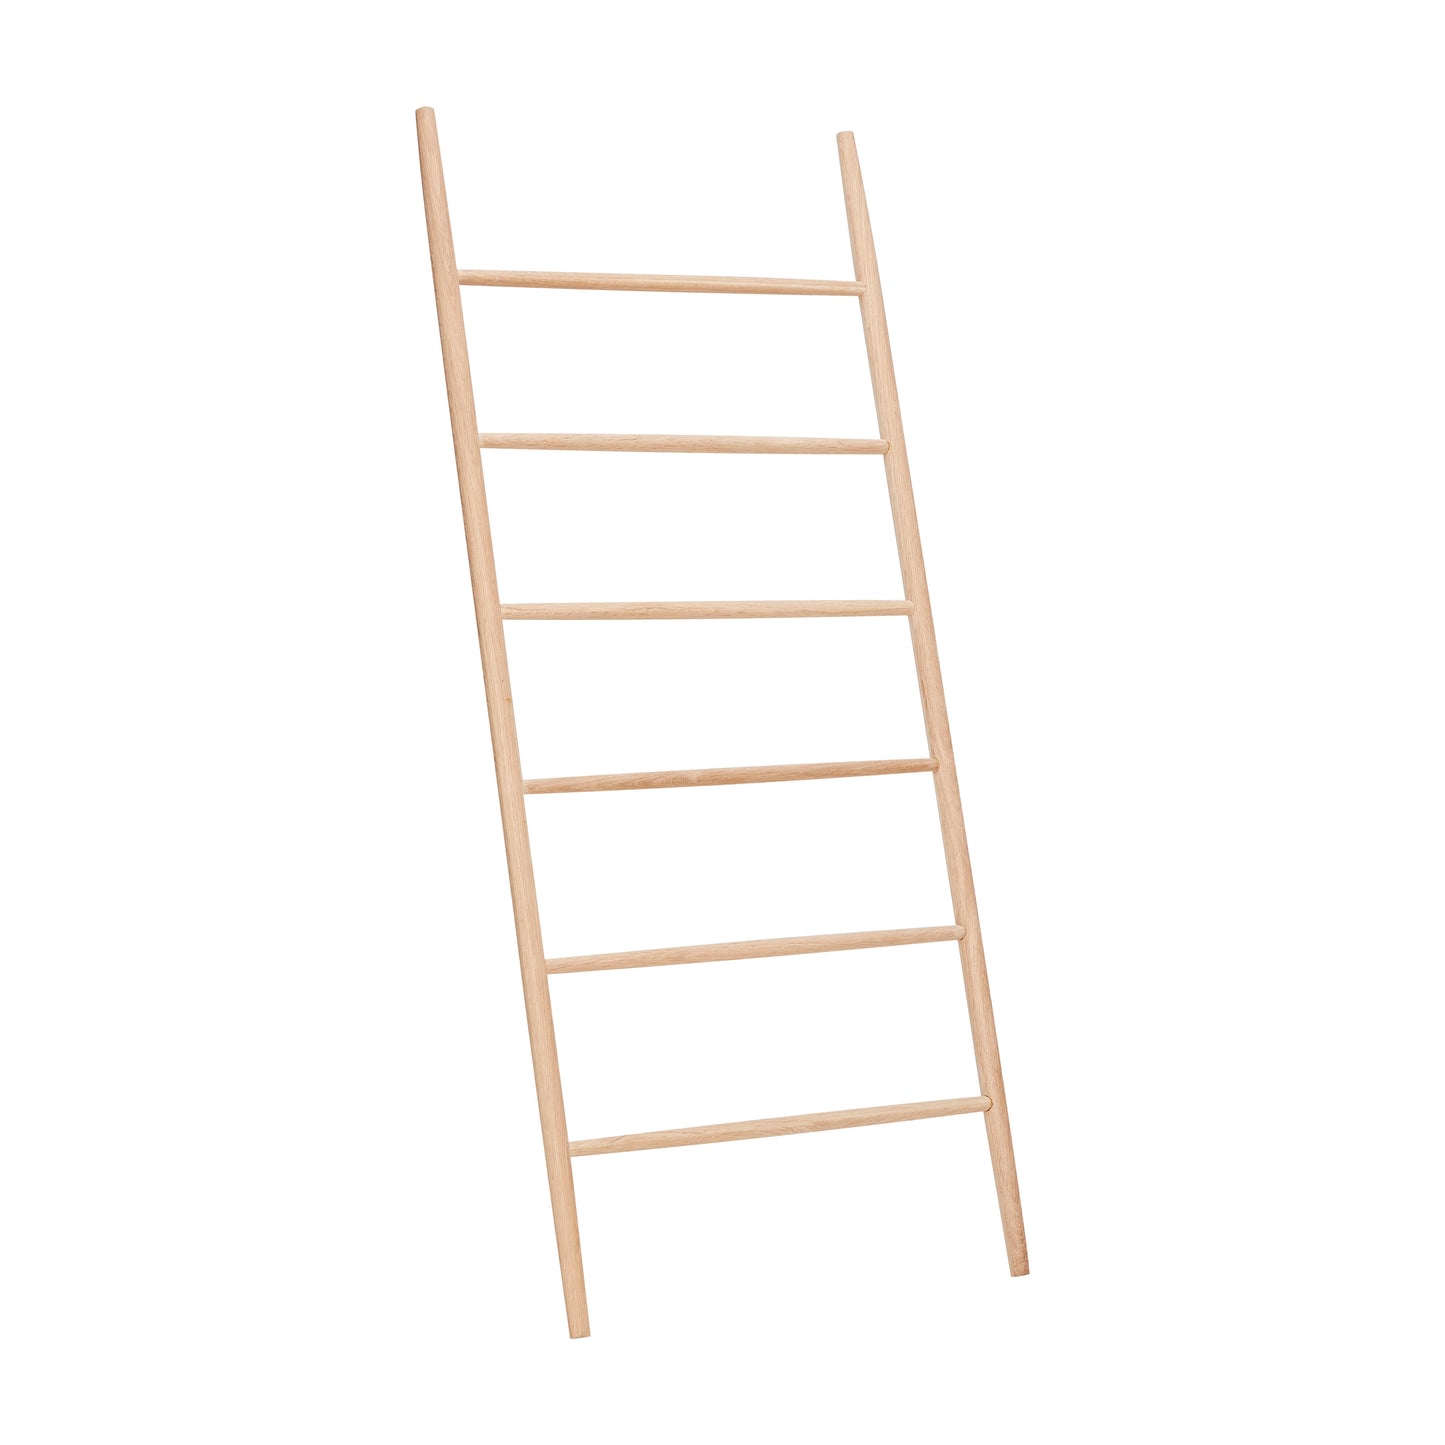 HUBSCH Lean Towel Ladder Natural